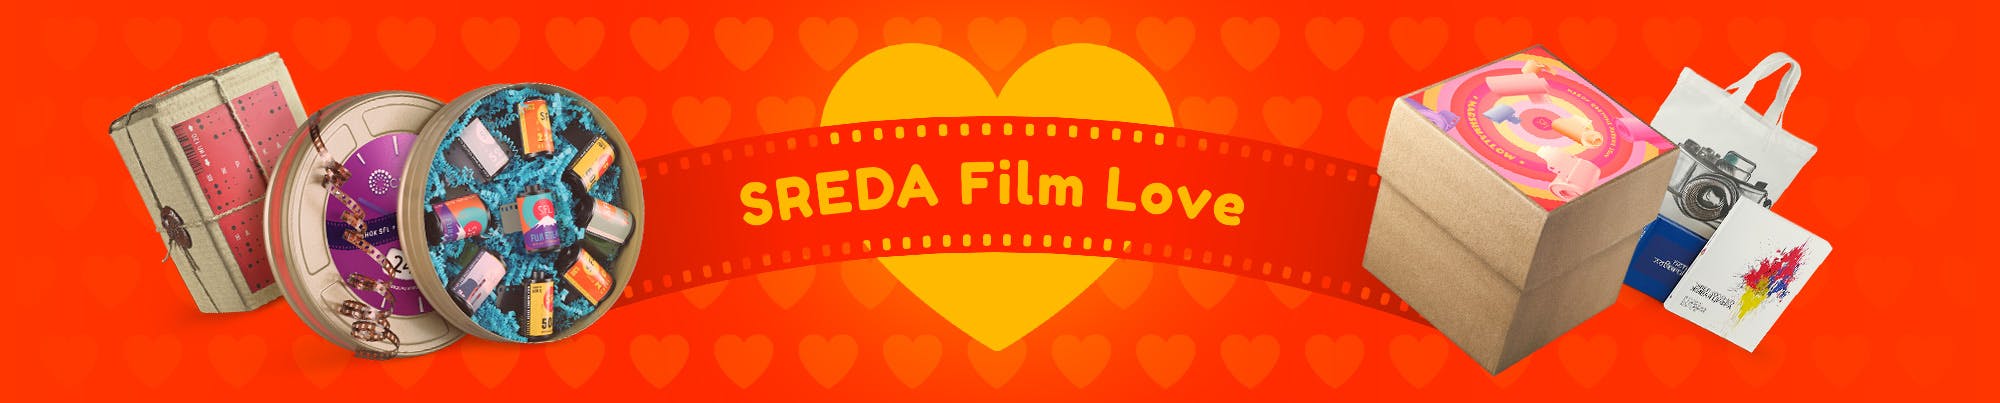 SREDA Film Love